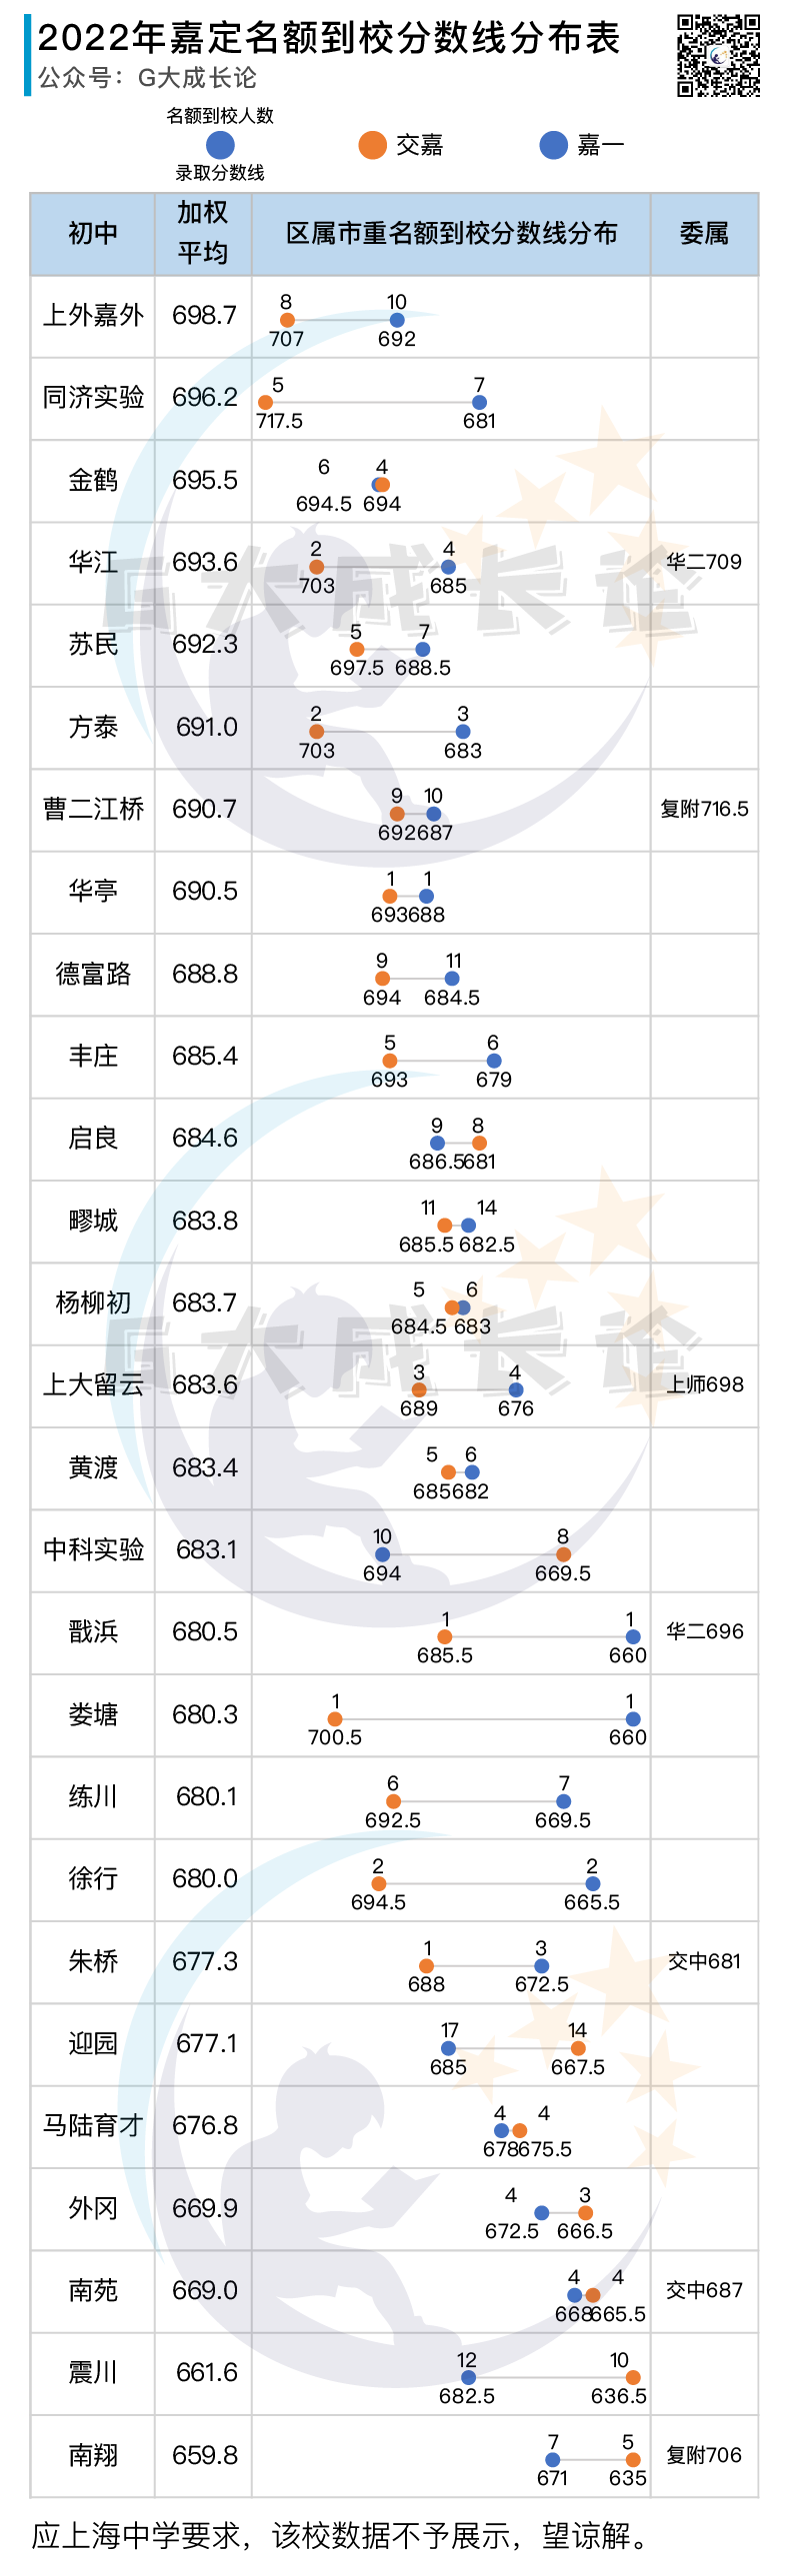 2022年名额到校分数线分布表 - 嘉定、宝山、长宁、青浦、奉贤、金山